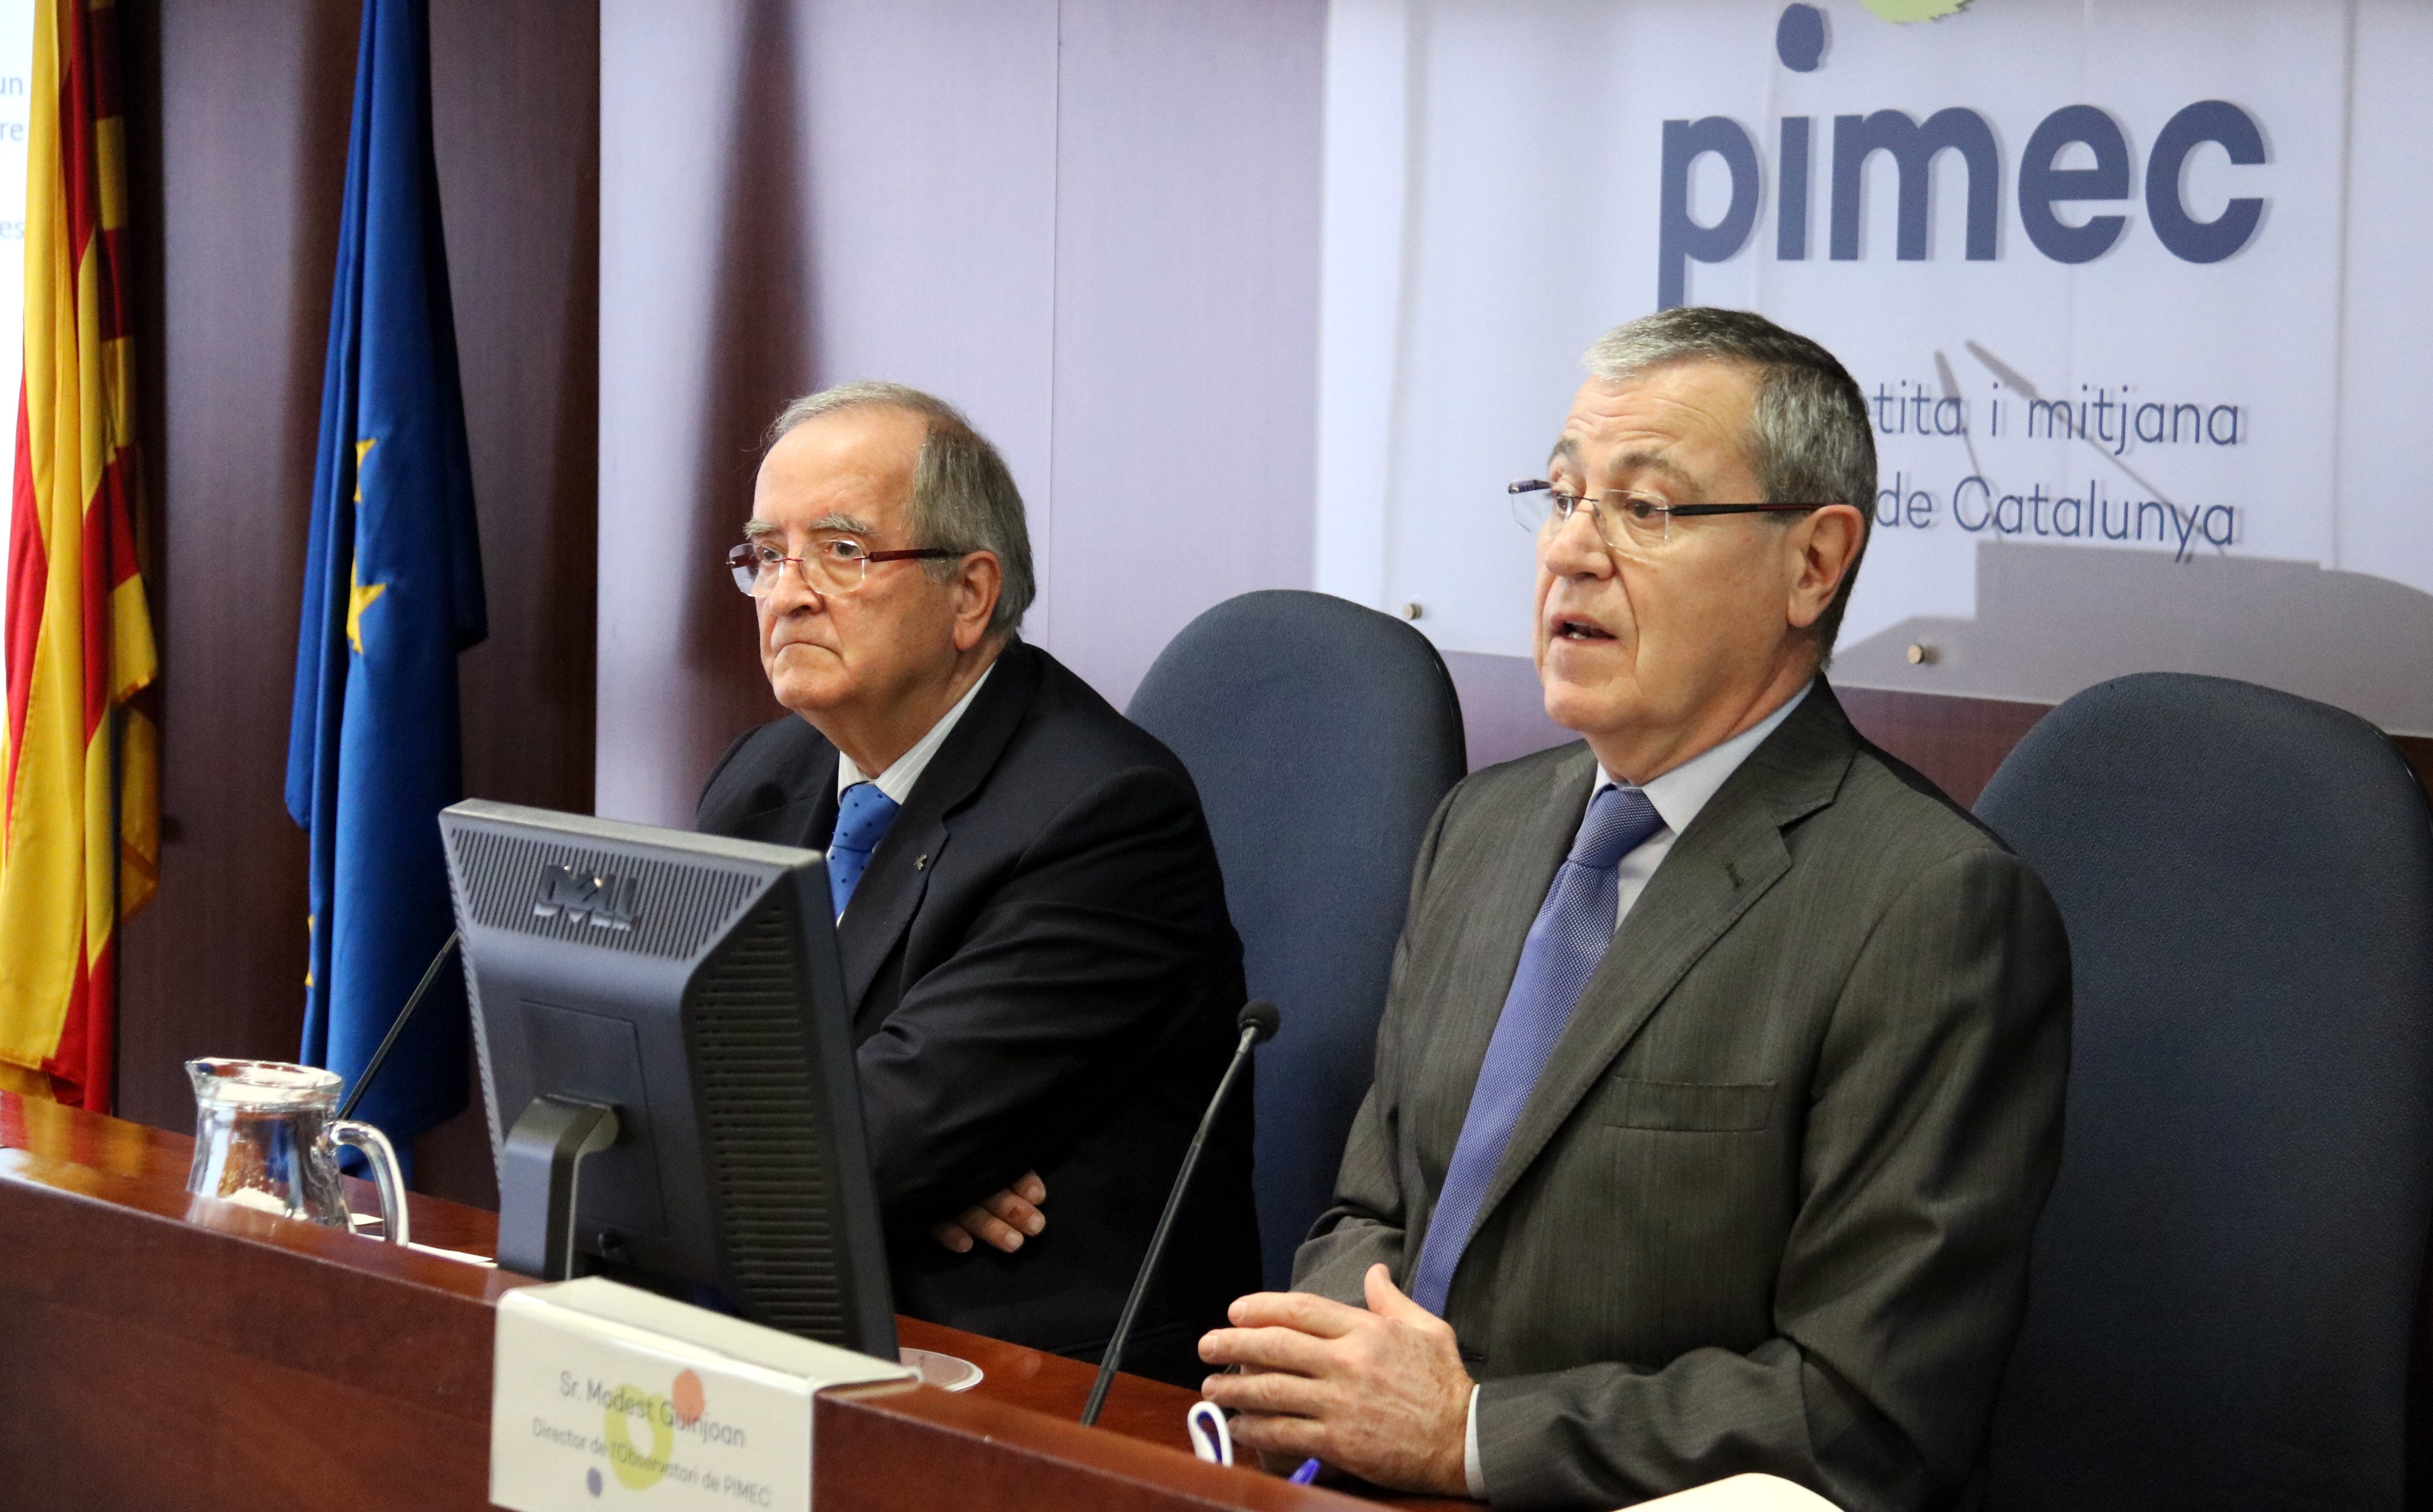 Pimec urge a aprobar los presupuestos "a pesar de que sean poco industriales"